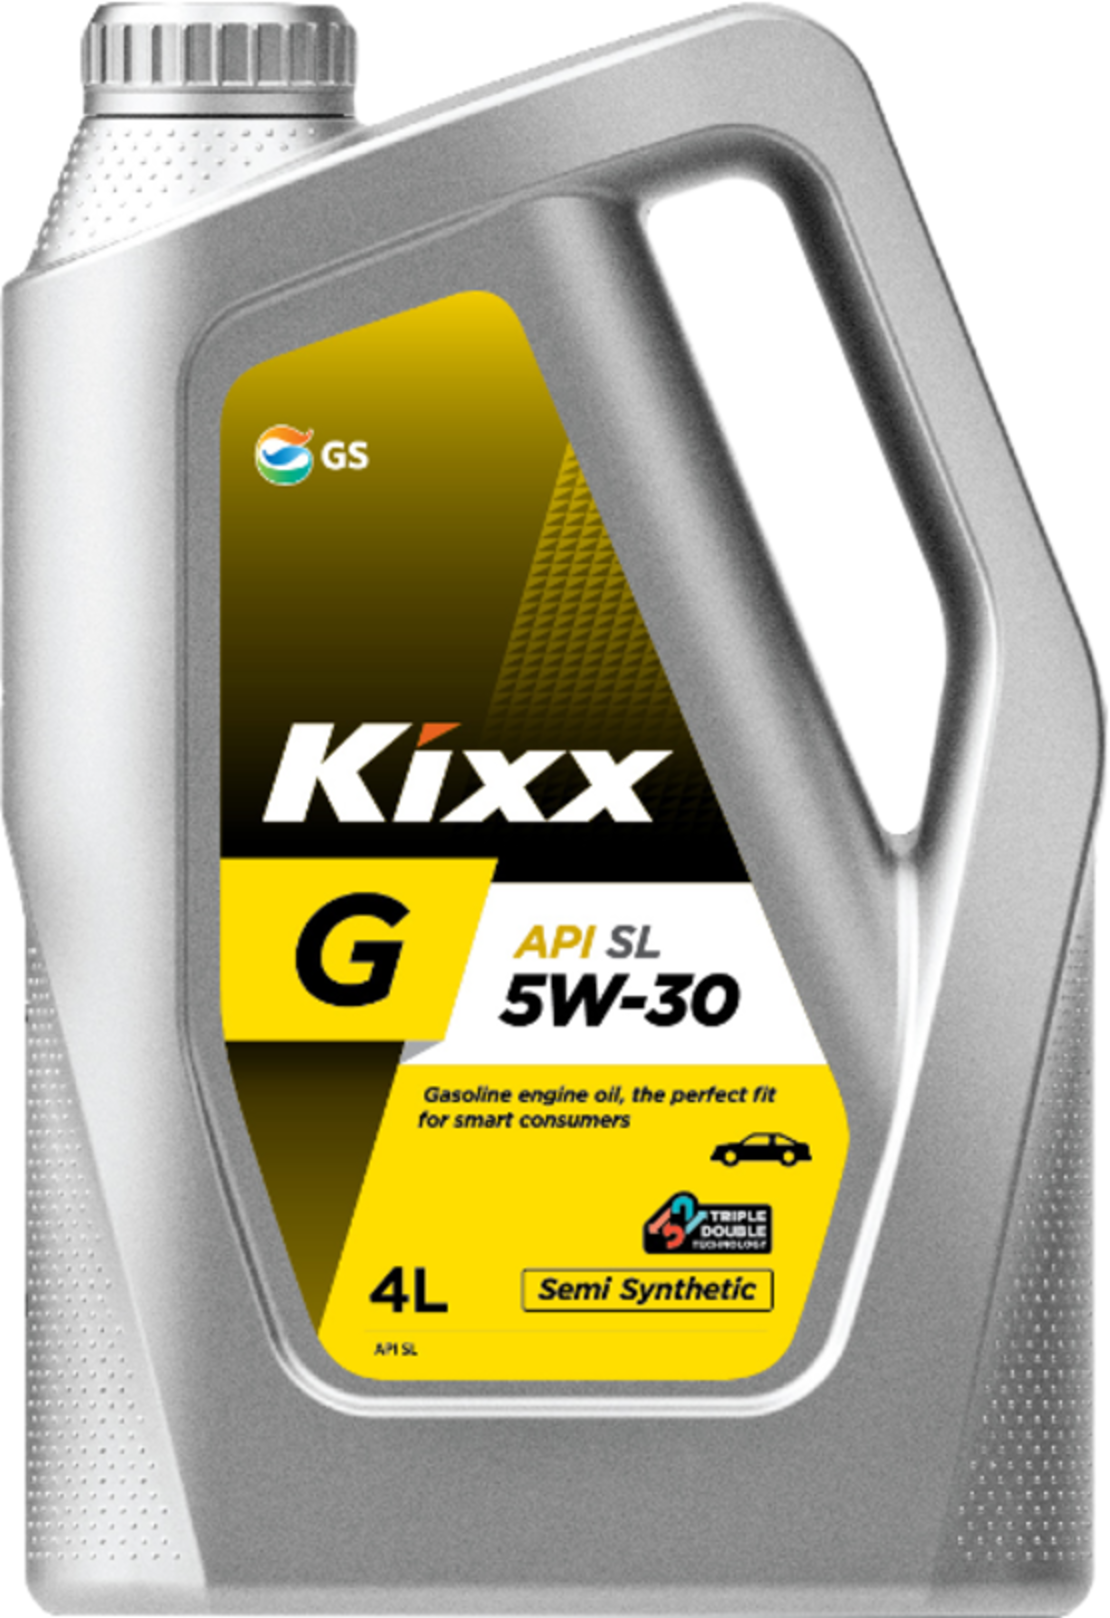 Kixx API SL 5W-30